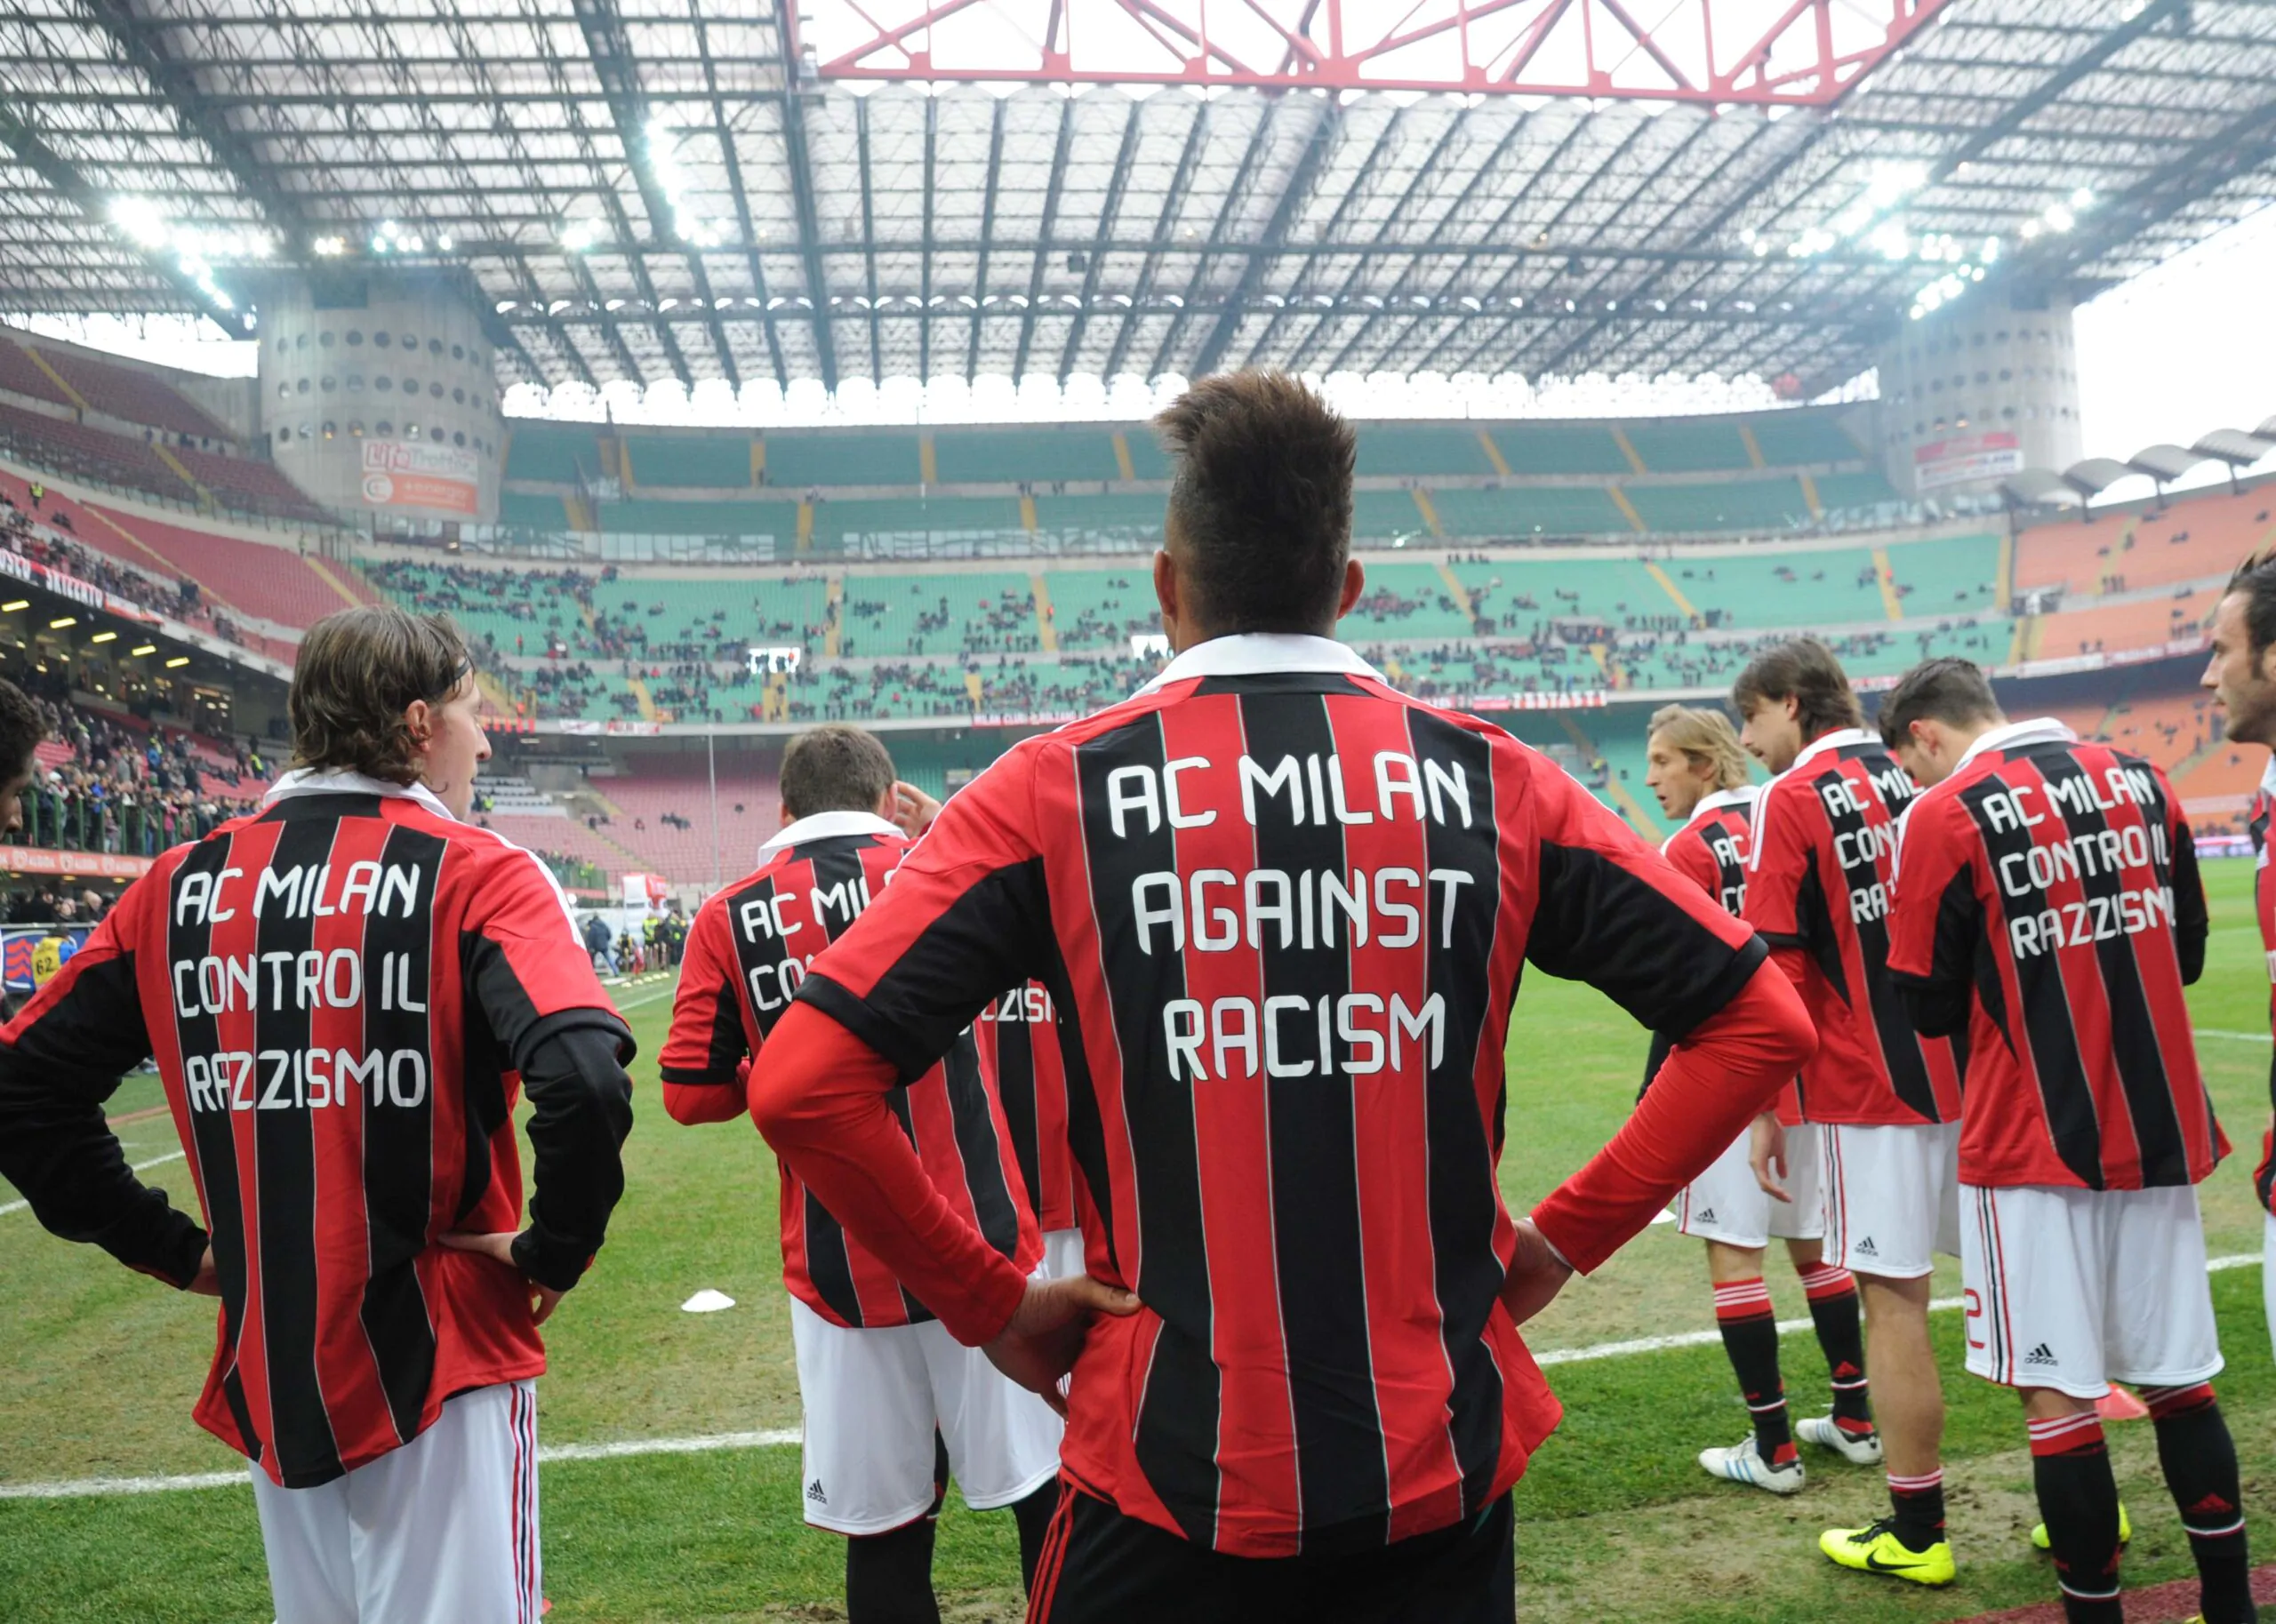 Il Milan contro il razzismo: a che punto siamo, a un anno da Busto?